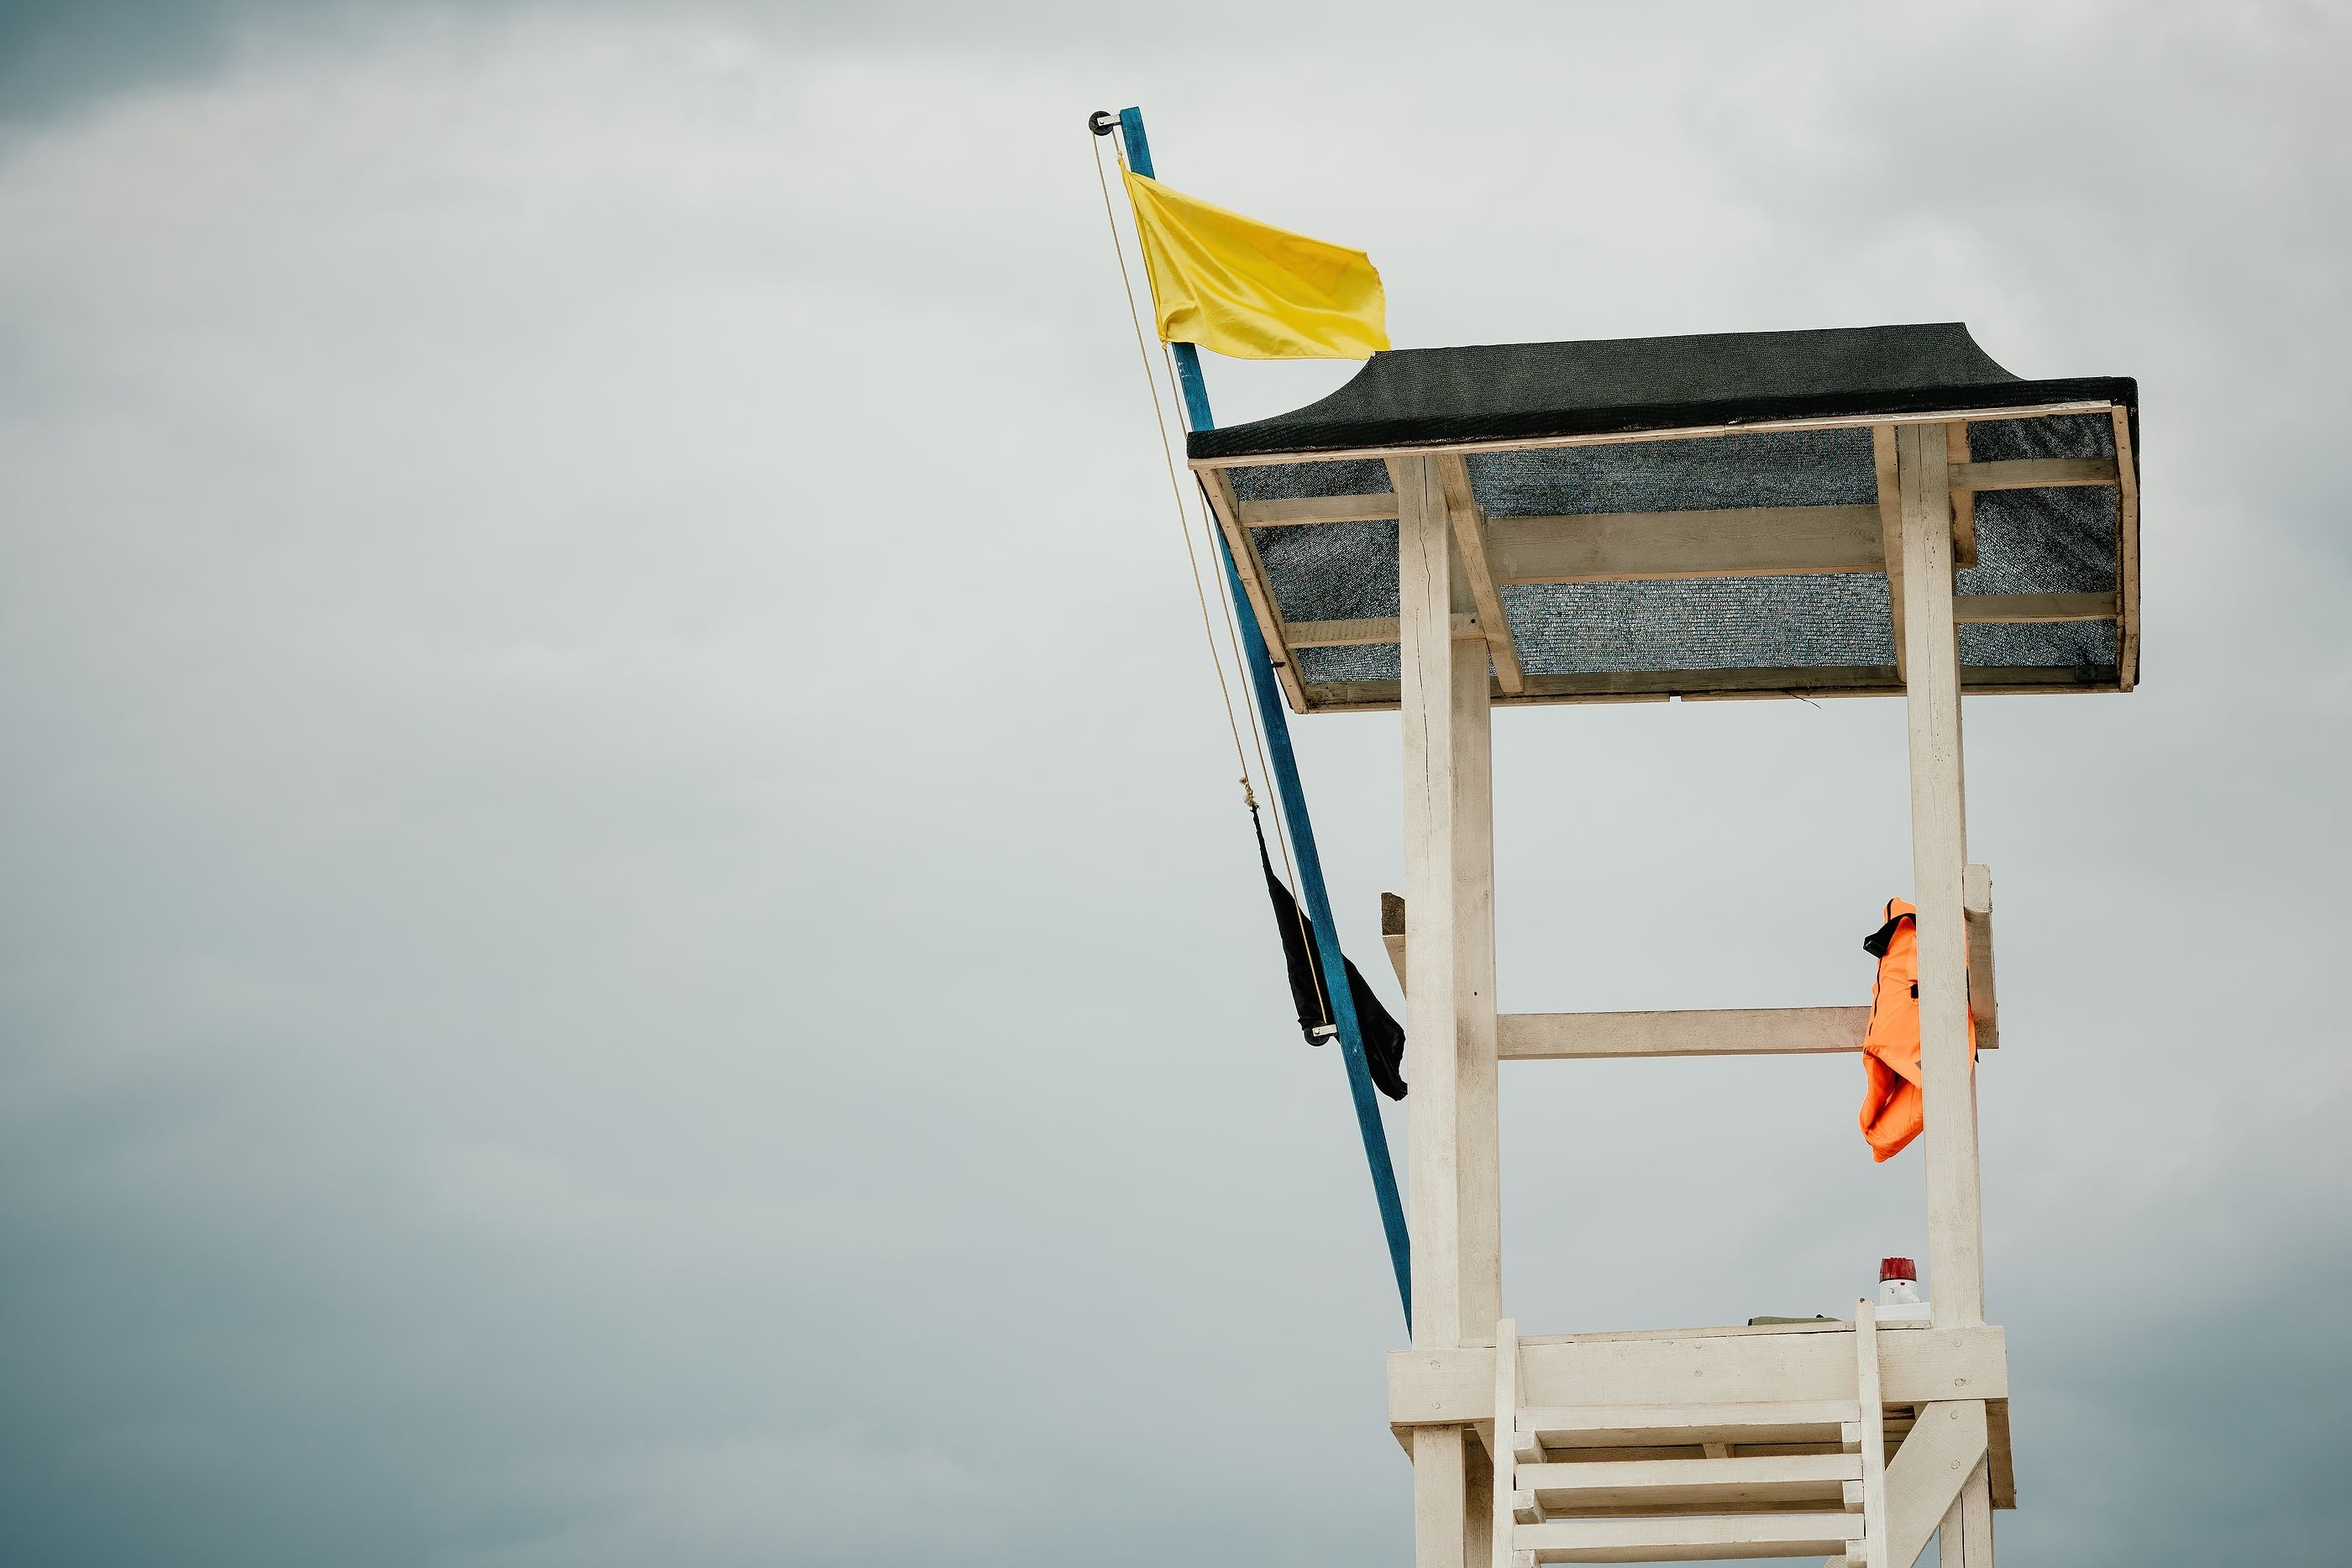 El auténtico significado de la bandera amarilla en la playa